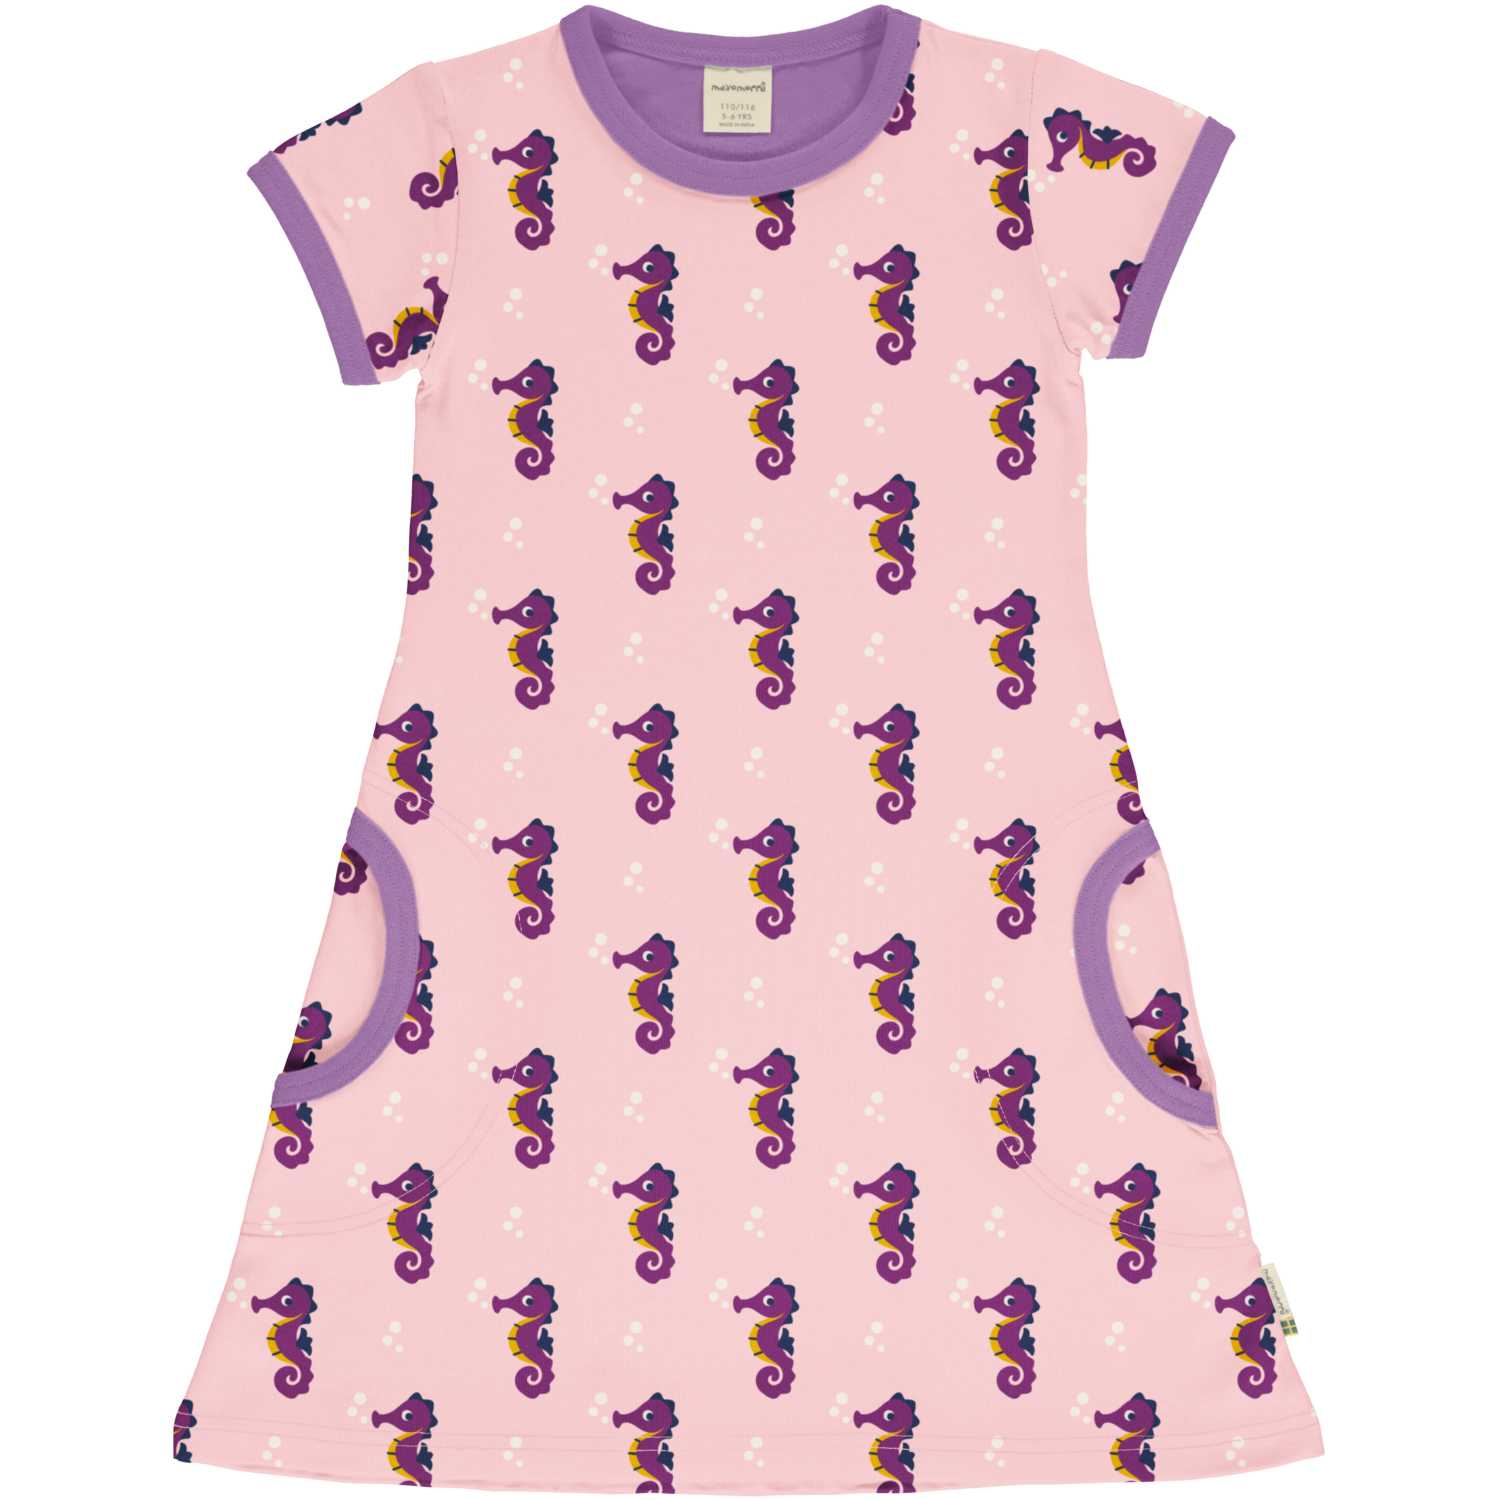 Maxomorra Seahorse Pocket Dress Dxs2414-Sxs2405 Clothing 3-4YRS / Pink,5-6YRS / Pink,7-8YRS / Pink,1-2 YRS / Pink